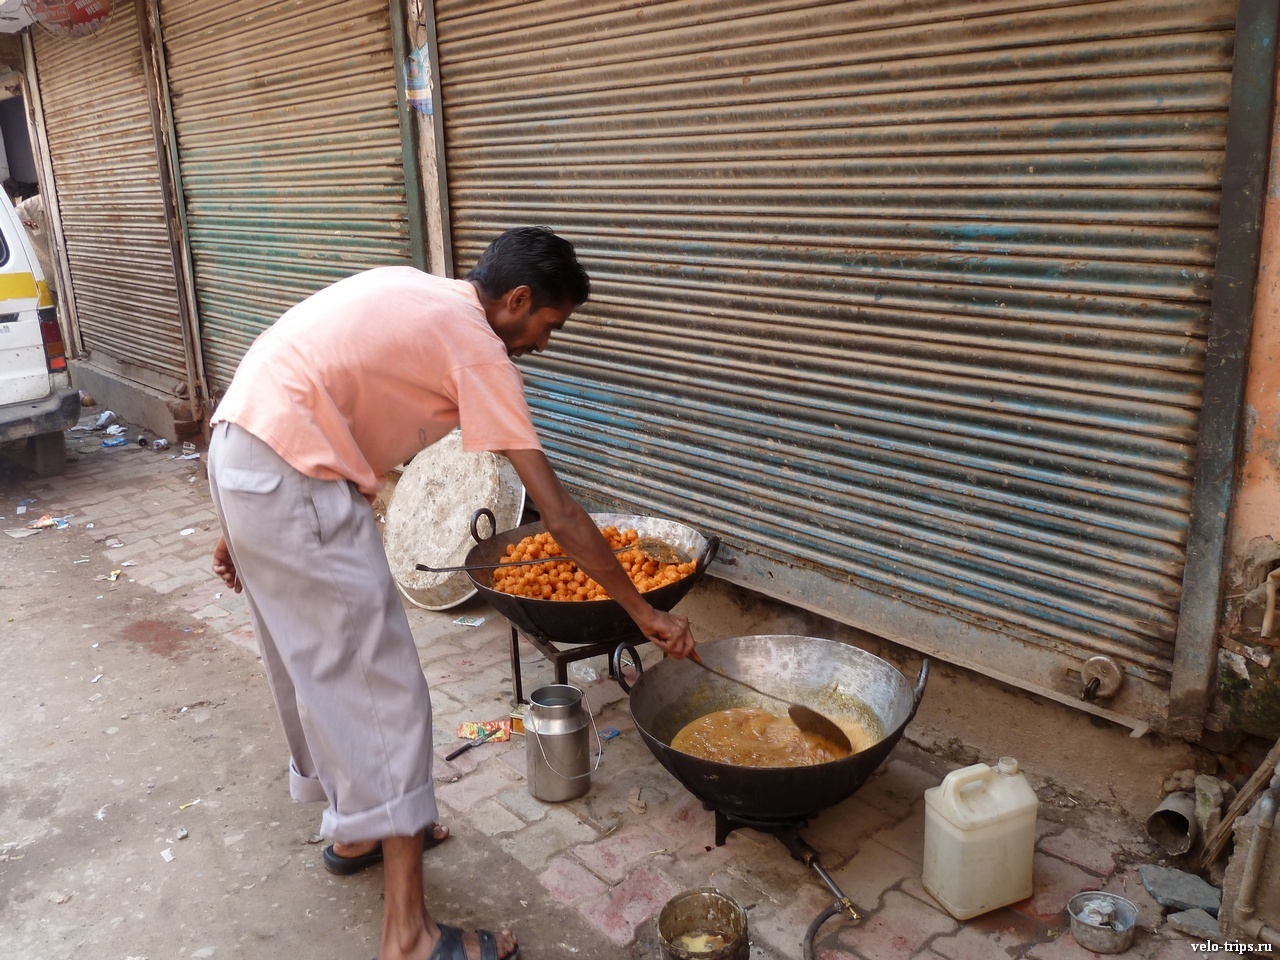 Street fast food in Delhi, India